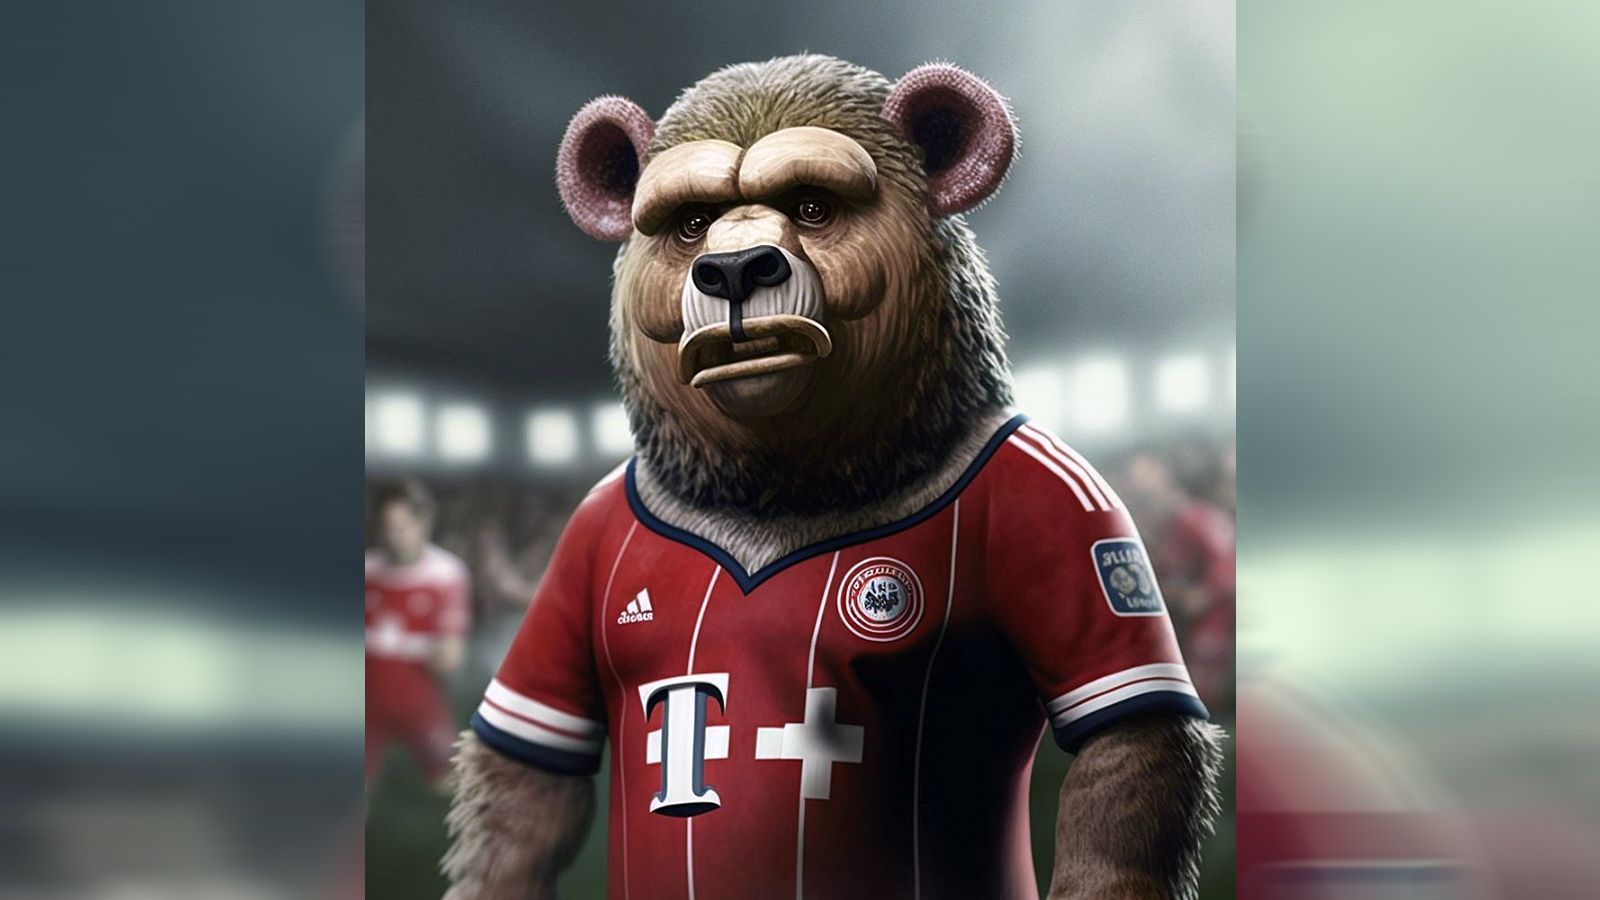 
                <strong>FC Bayern München</strong><br>
                "Nach Berni entschied sich der FCB für einen Gorilla und hat Donkey Kong auf Wish bestellt", schrieb Twitter-Userin "footballjessy" zum neuen Bayern-Maskottchen, das die AI erstellt hat. Das eigentliche Bayern-Maskottchen Berni ist ein Bär.
              